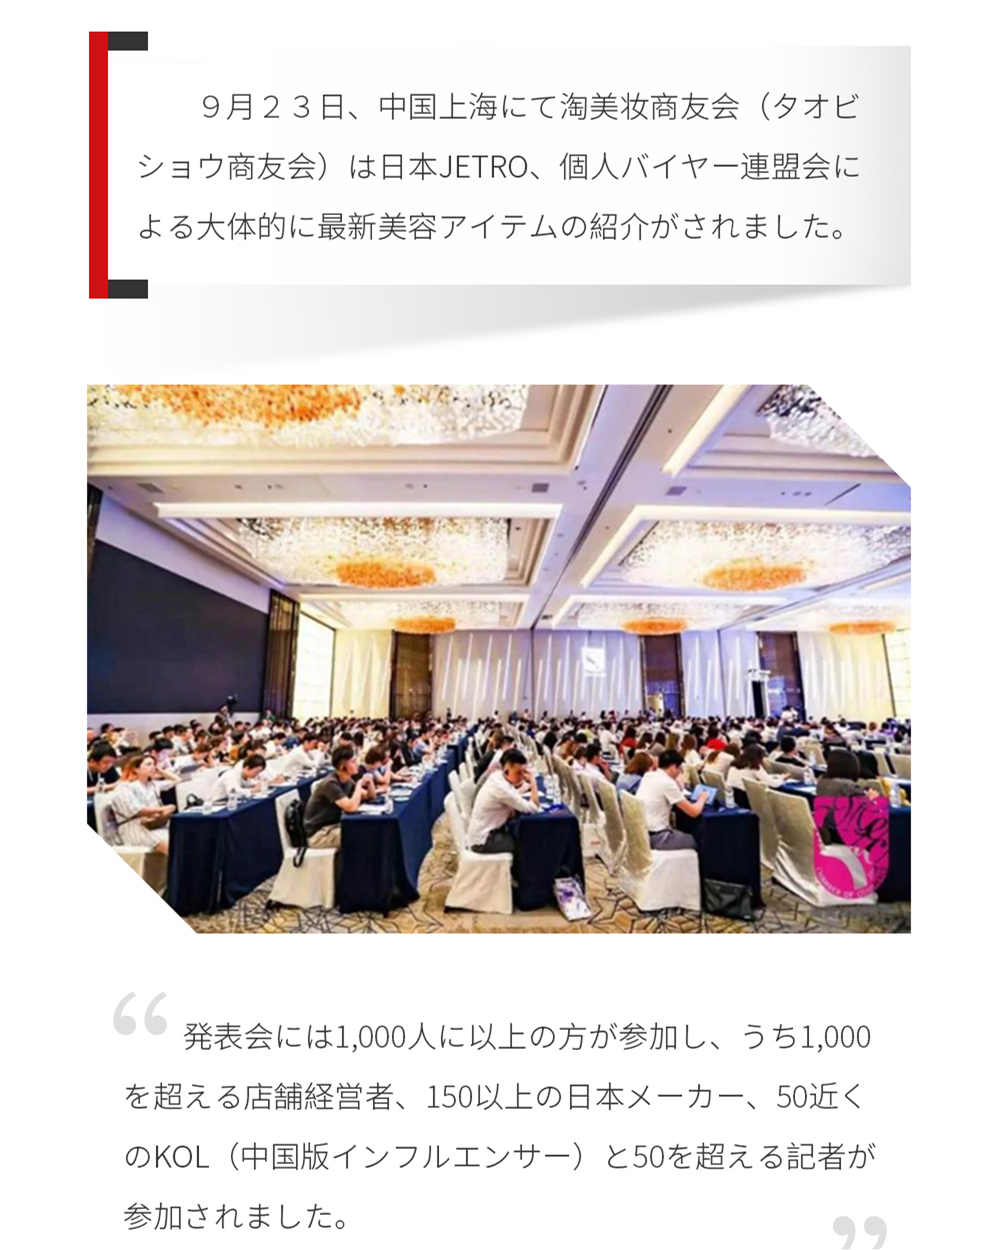 ９月２３日、中国上海にて淘美妆商友会（タオビショウ商友会）は日本Jetro、個人バイヤー連盟会による大体的に最新美容アイテムの紹介がされました。